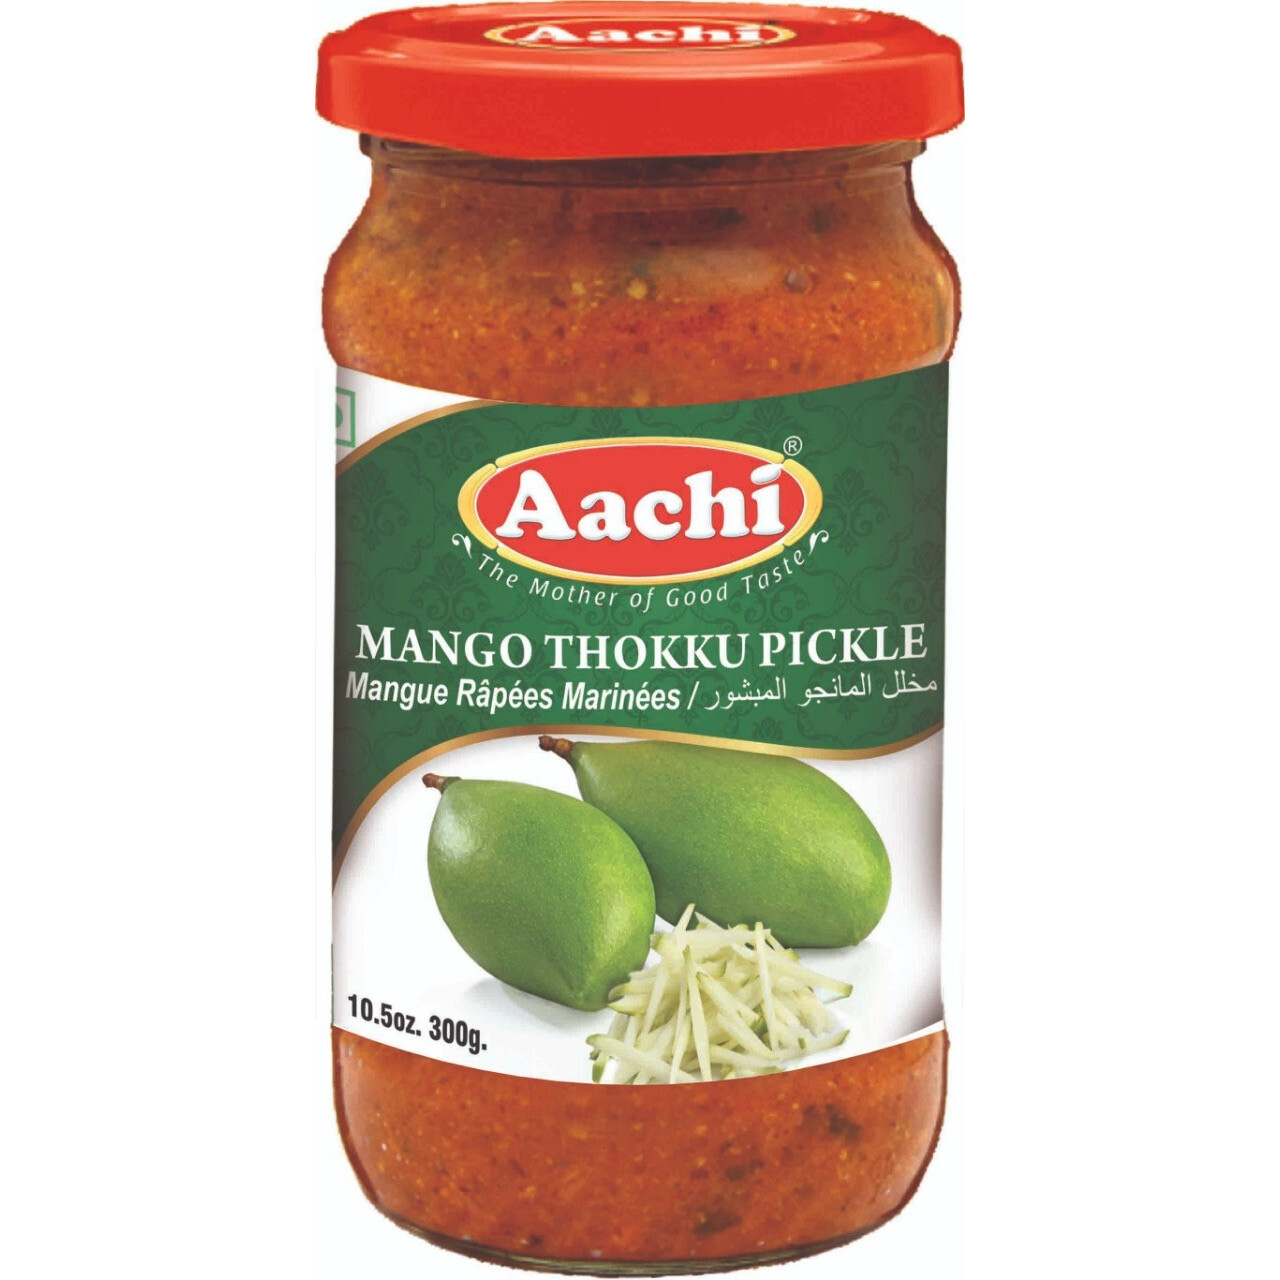 Aachi Mango Thokku Pickle 200g